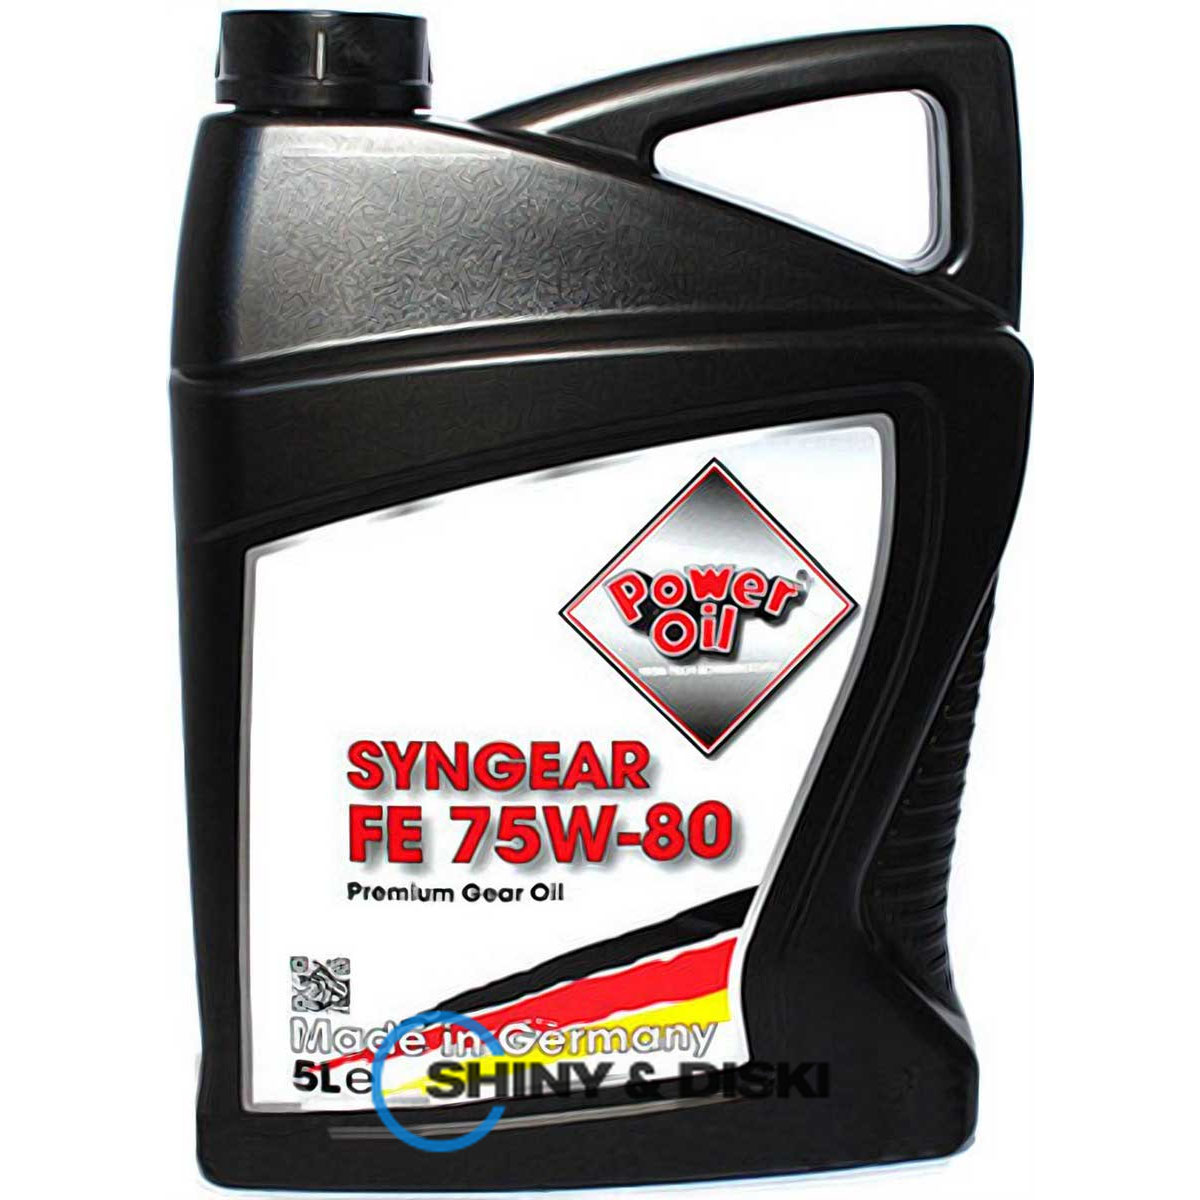 power oil syngear fe 75w-80 (5л)